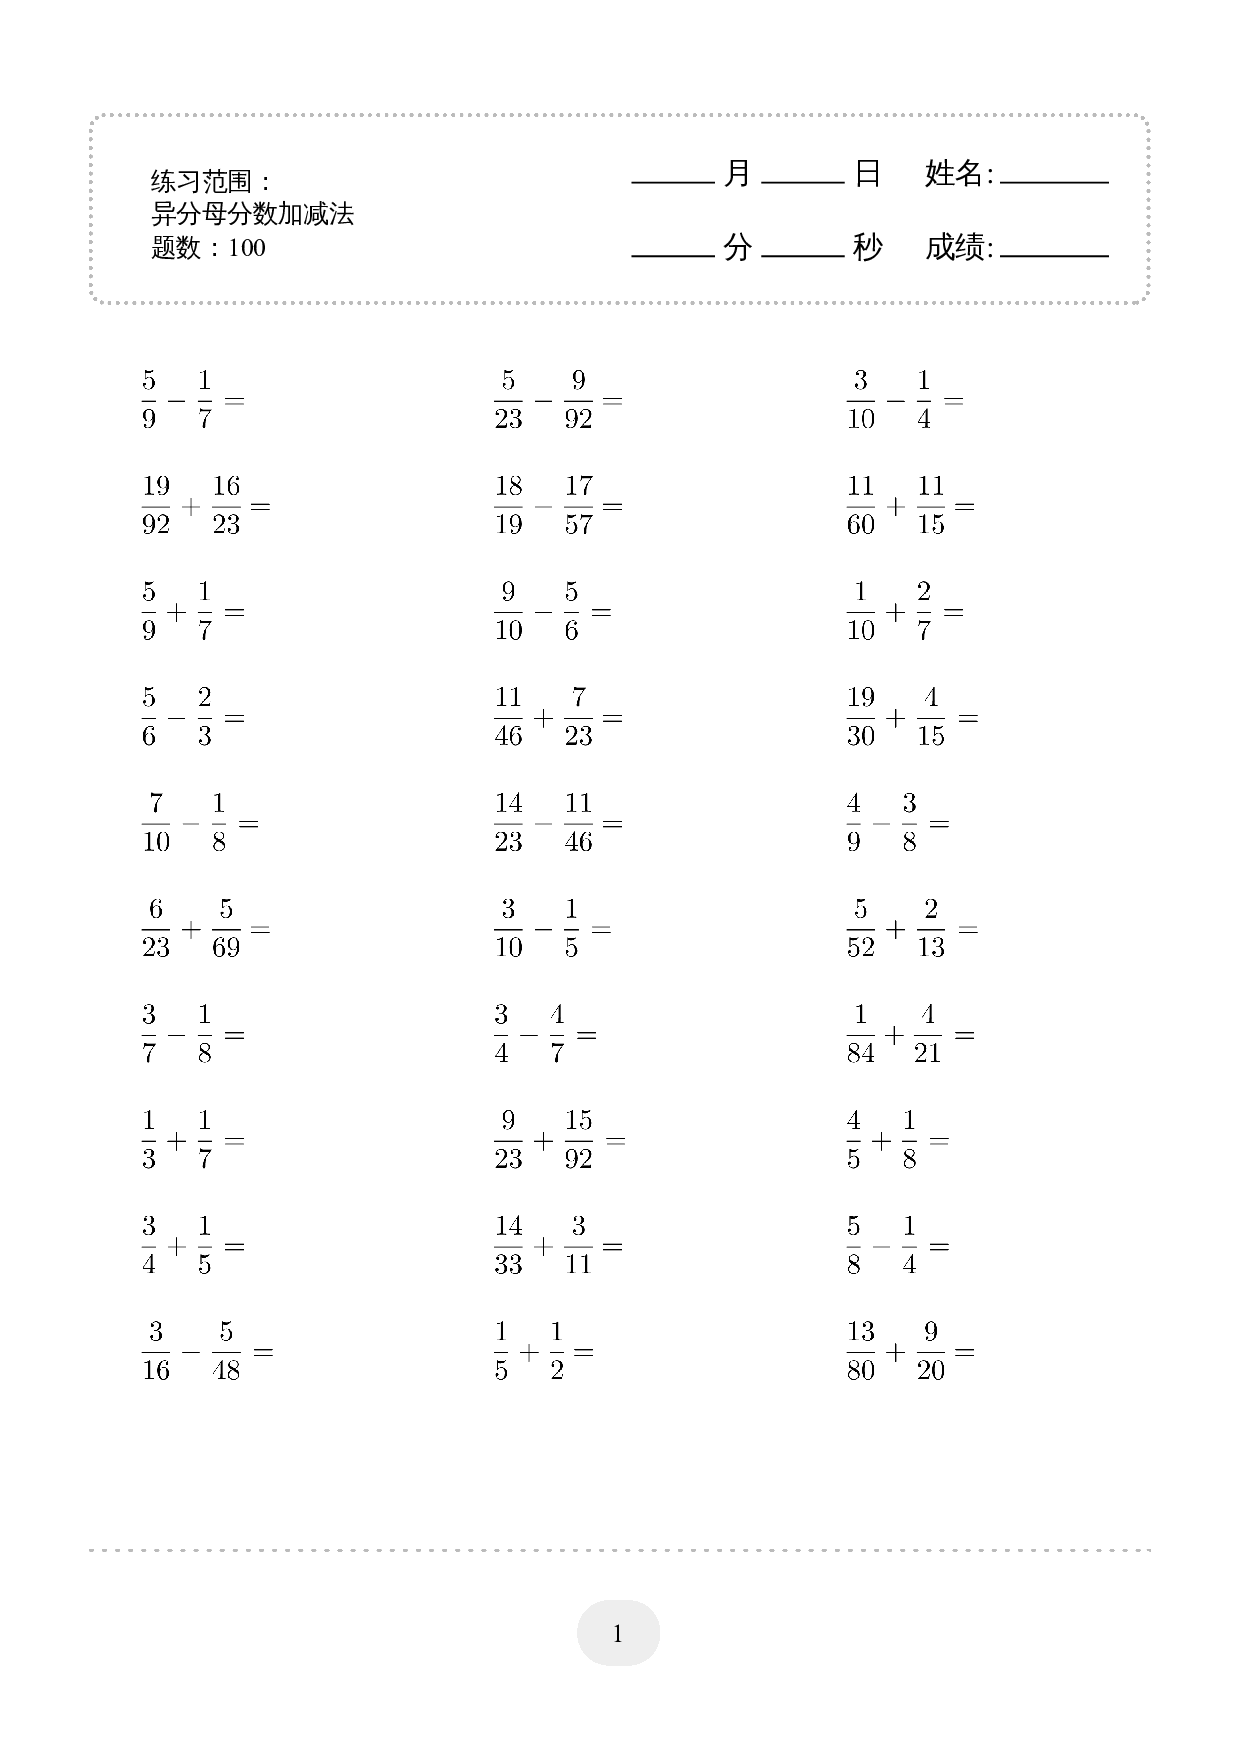 5年级下册数学口算题 (异分母分数加减法) 1500题